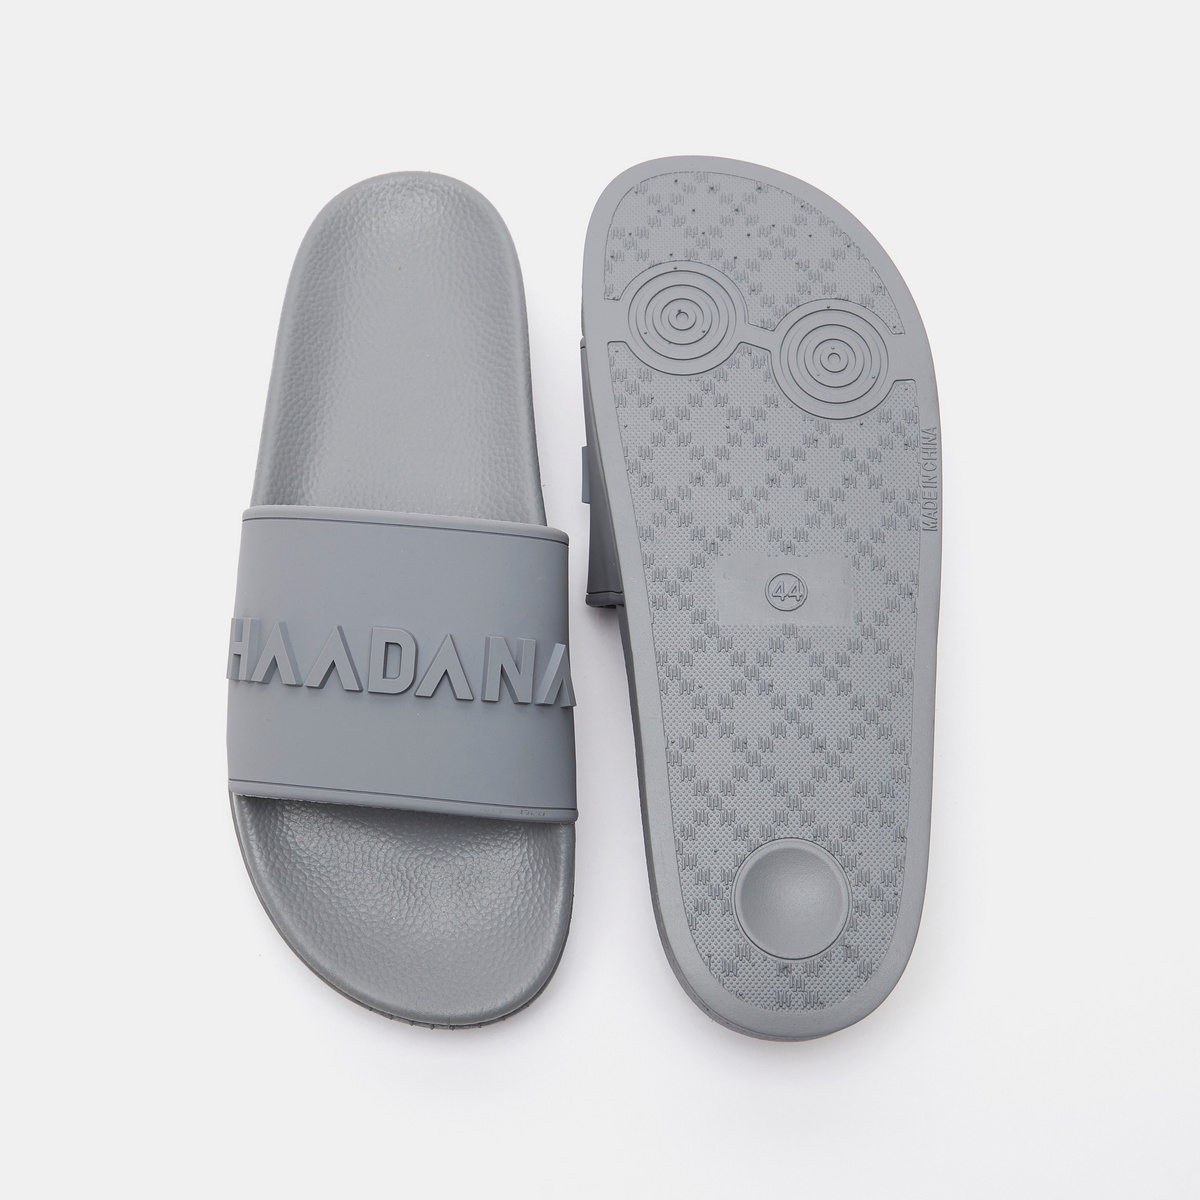 Shop Haadana Textured Slide Slippers Online | Splash Saudi